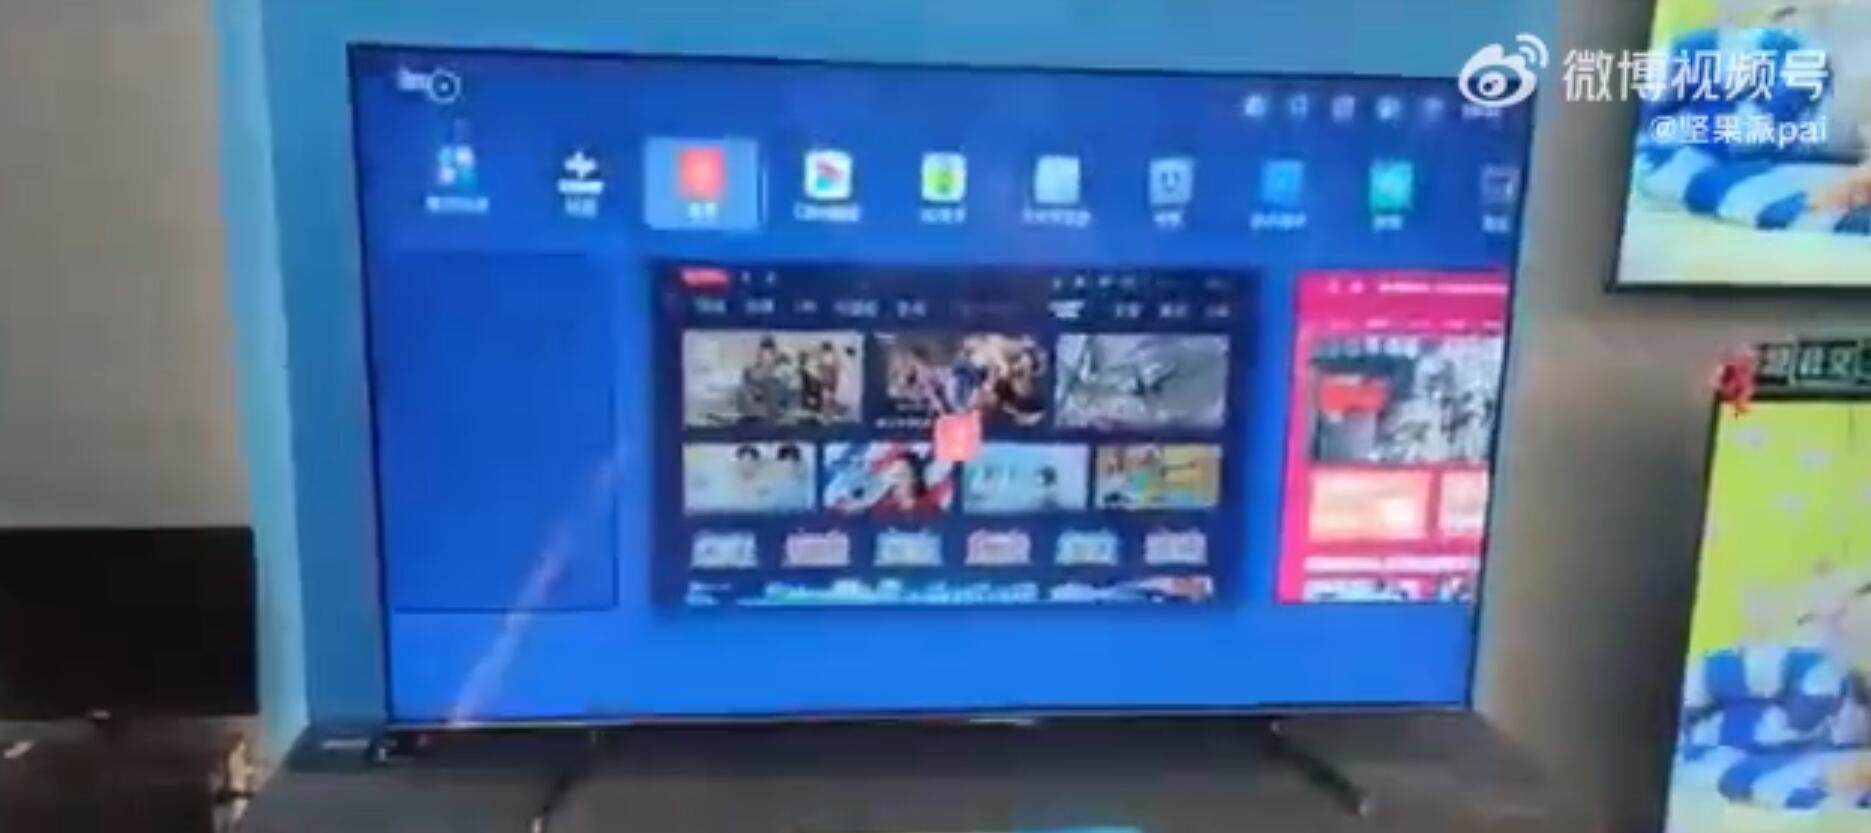 康佳锤子Smartisan TV OS疑曝光 或首次适配电视登录微信